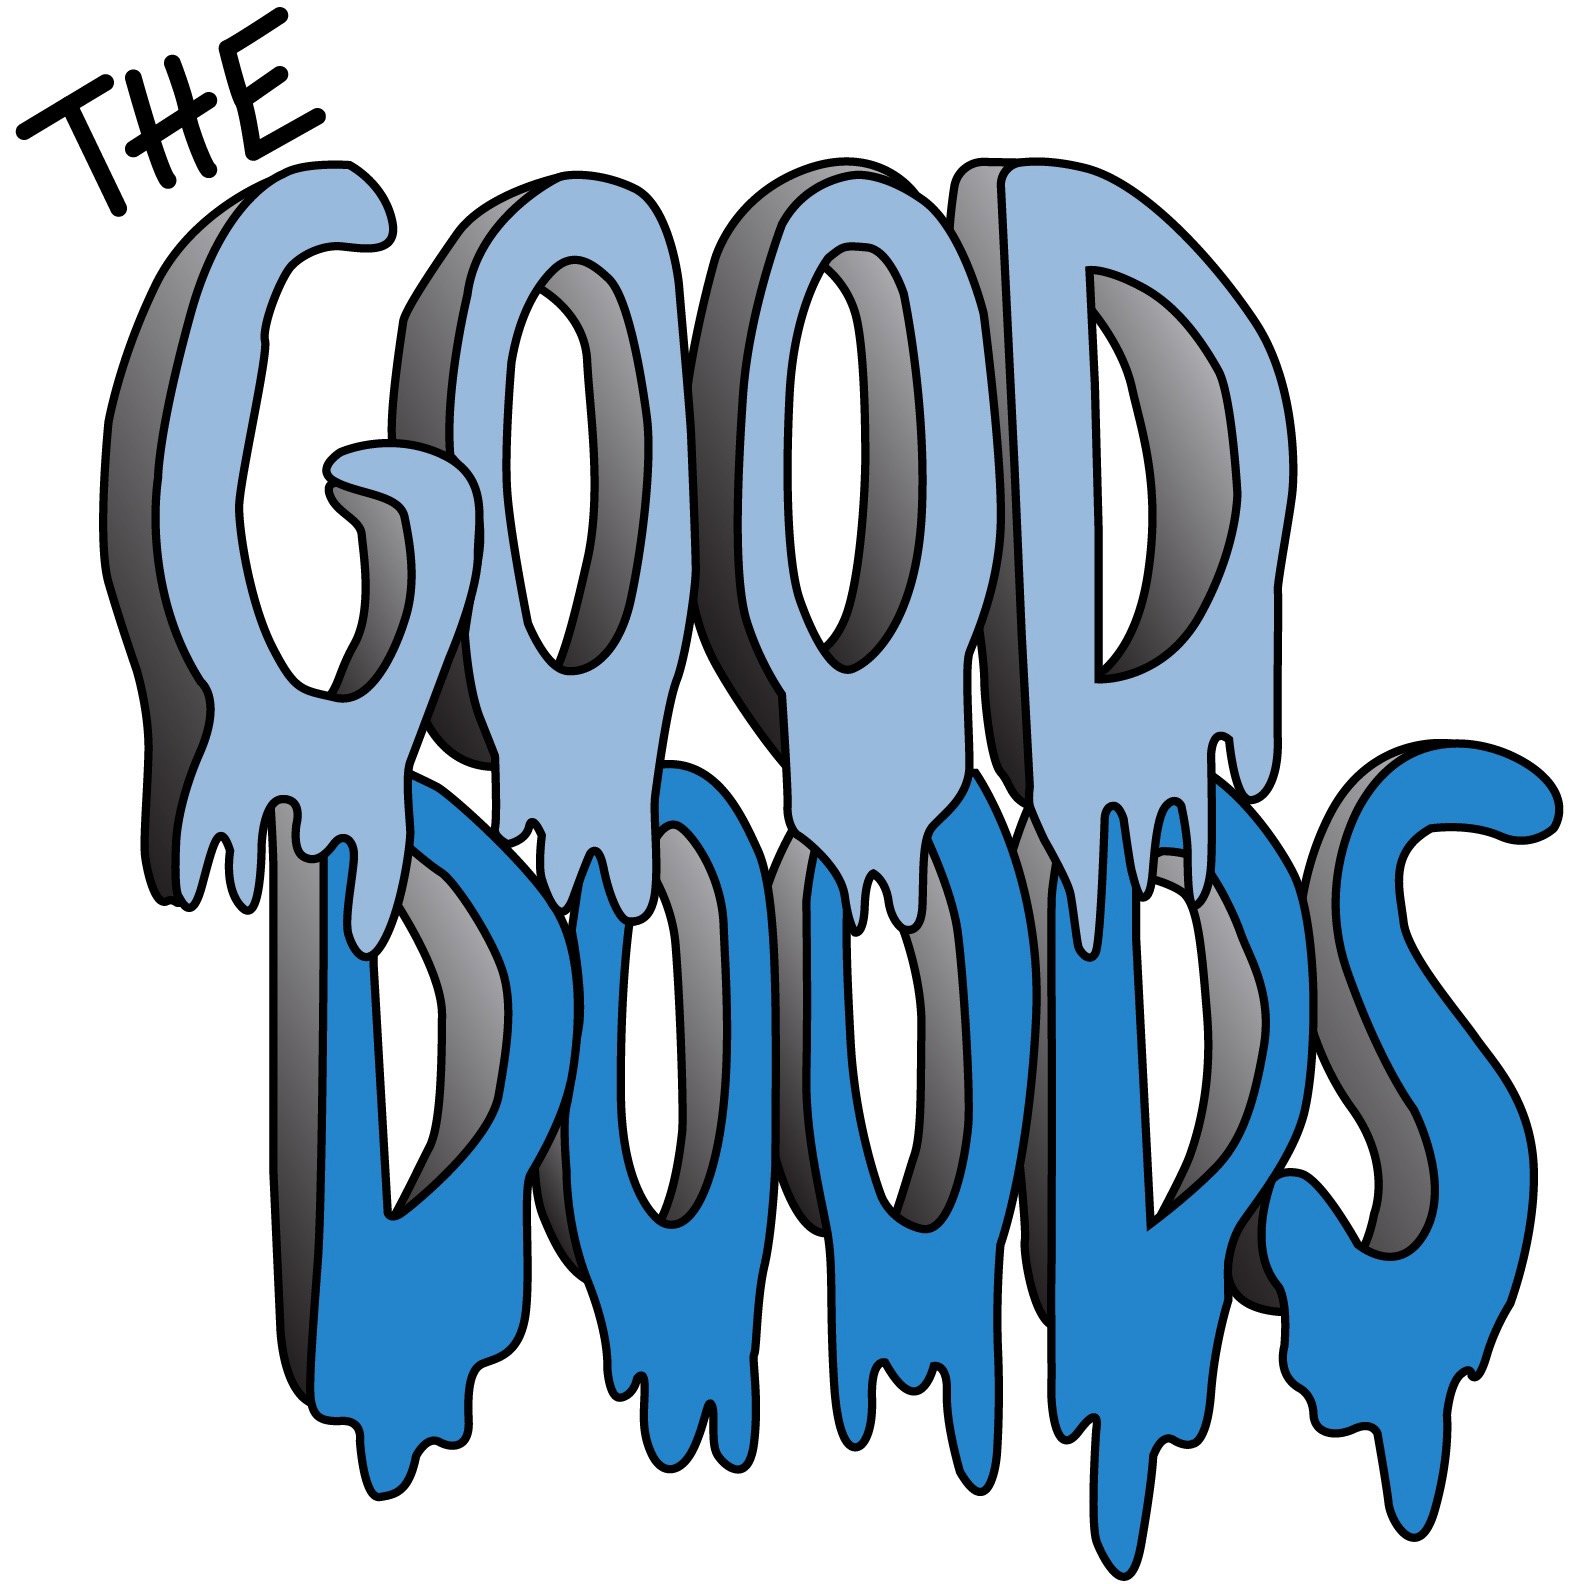 The Good Doods